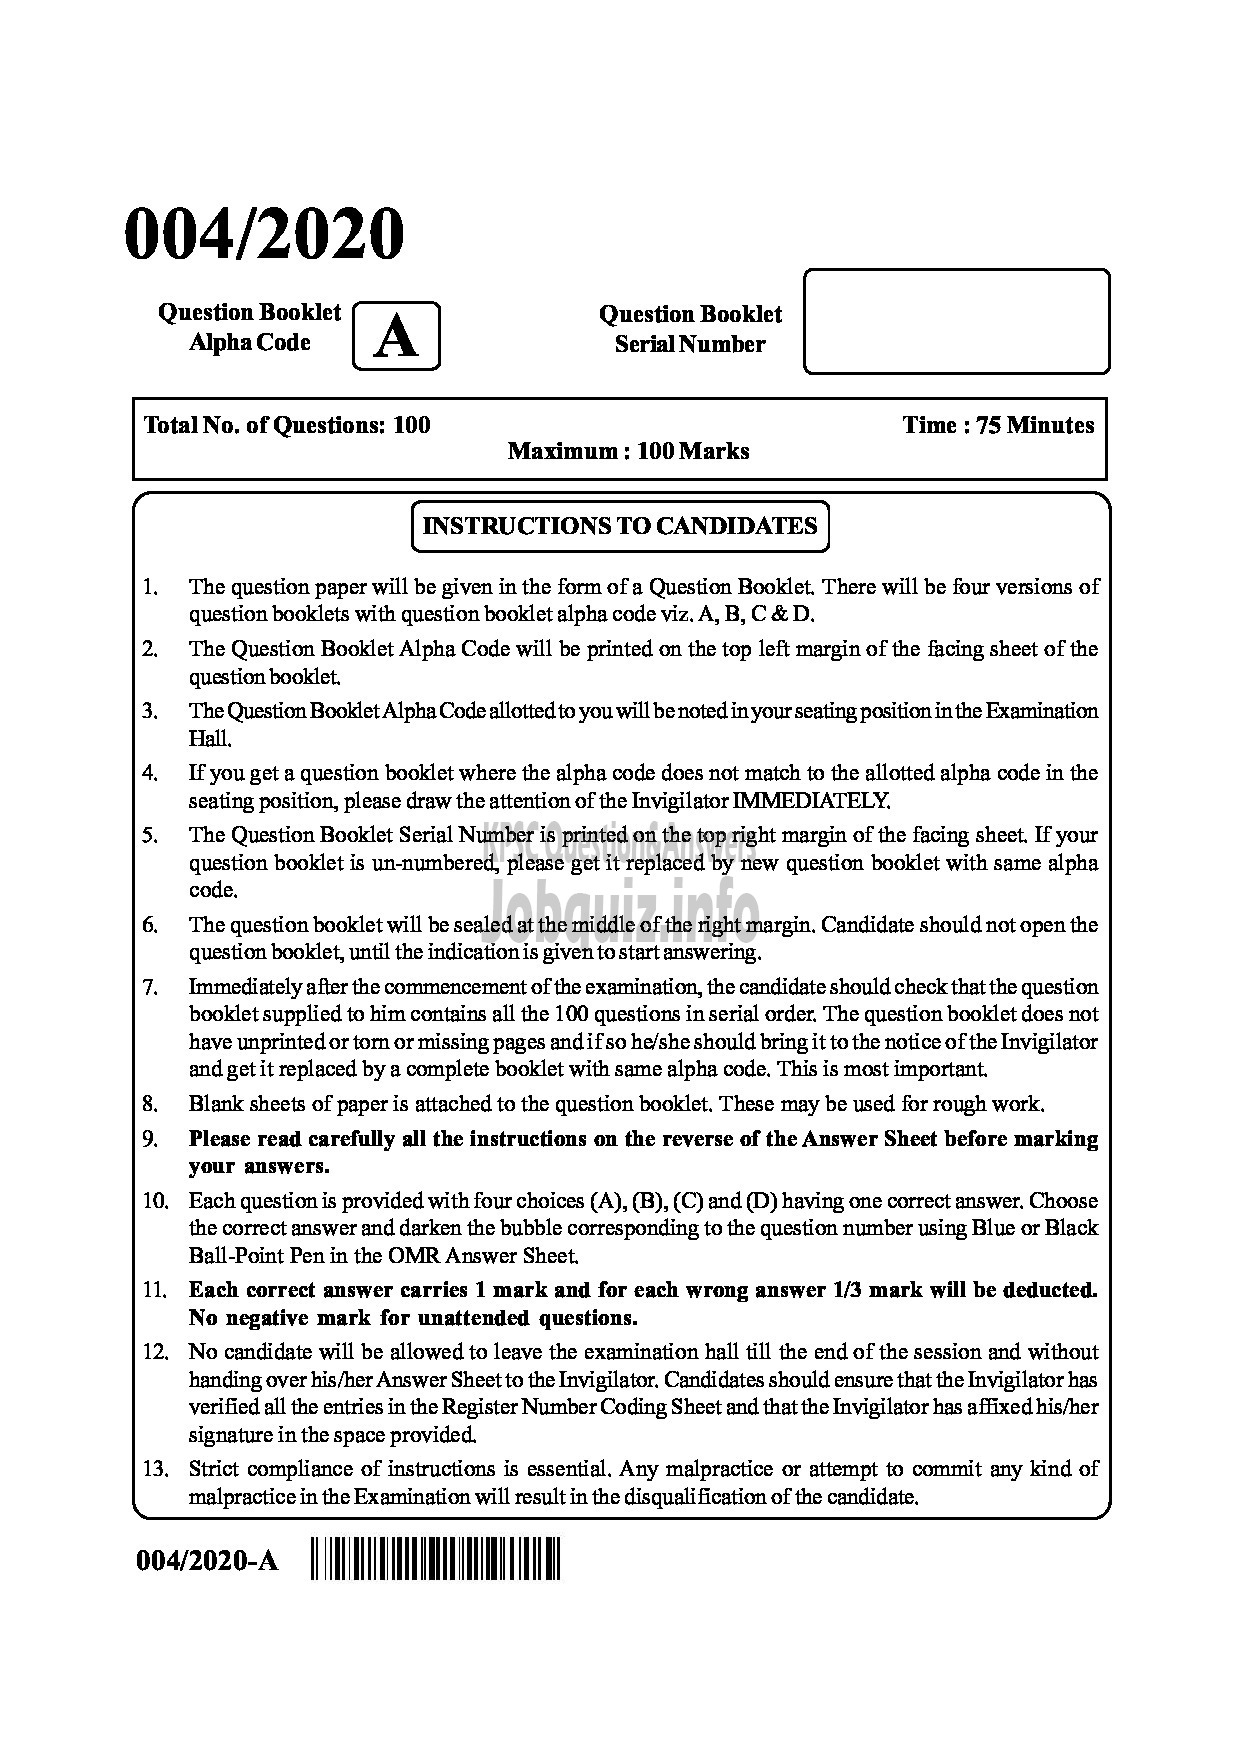 Kerala PSC Question Paper - COMPUTER ASSISTANT GR II In GOVT SECRETARIAT ENGLISH -1